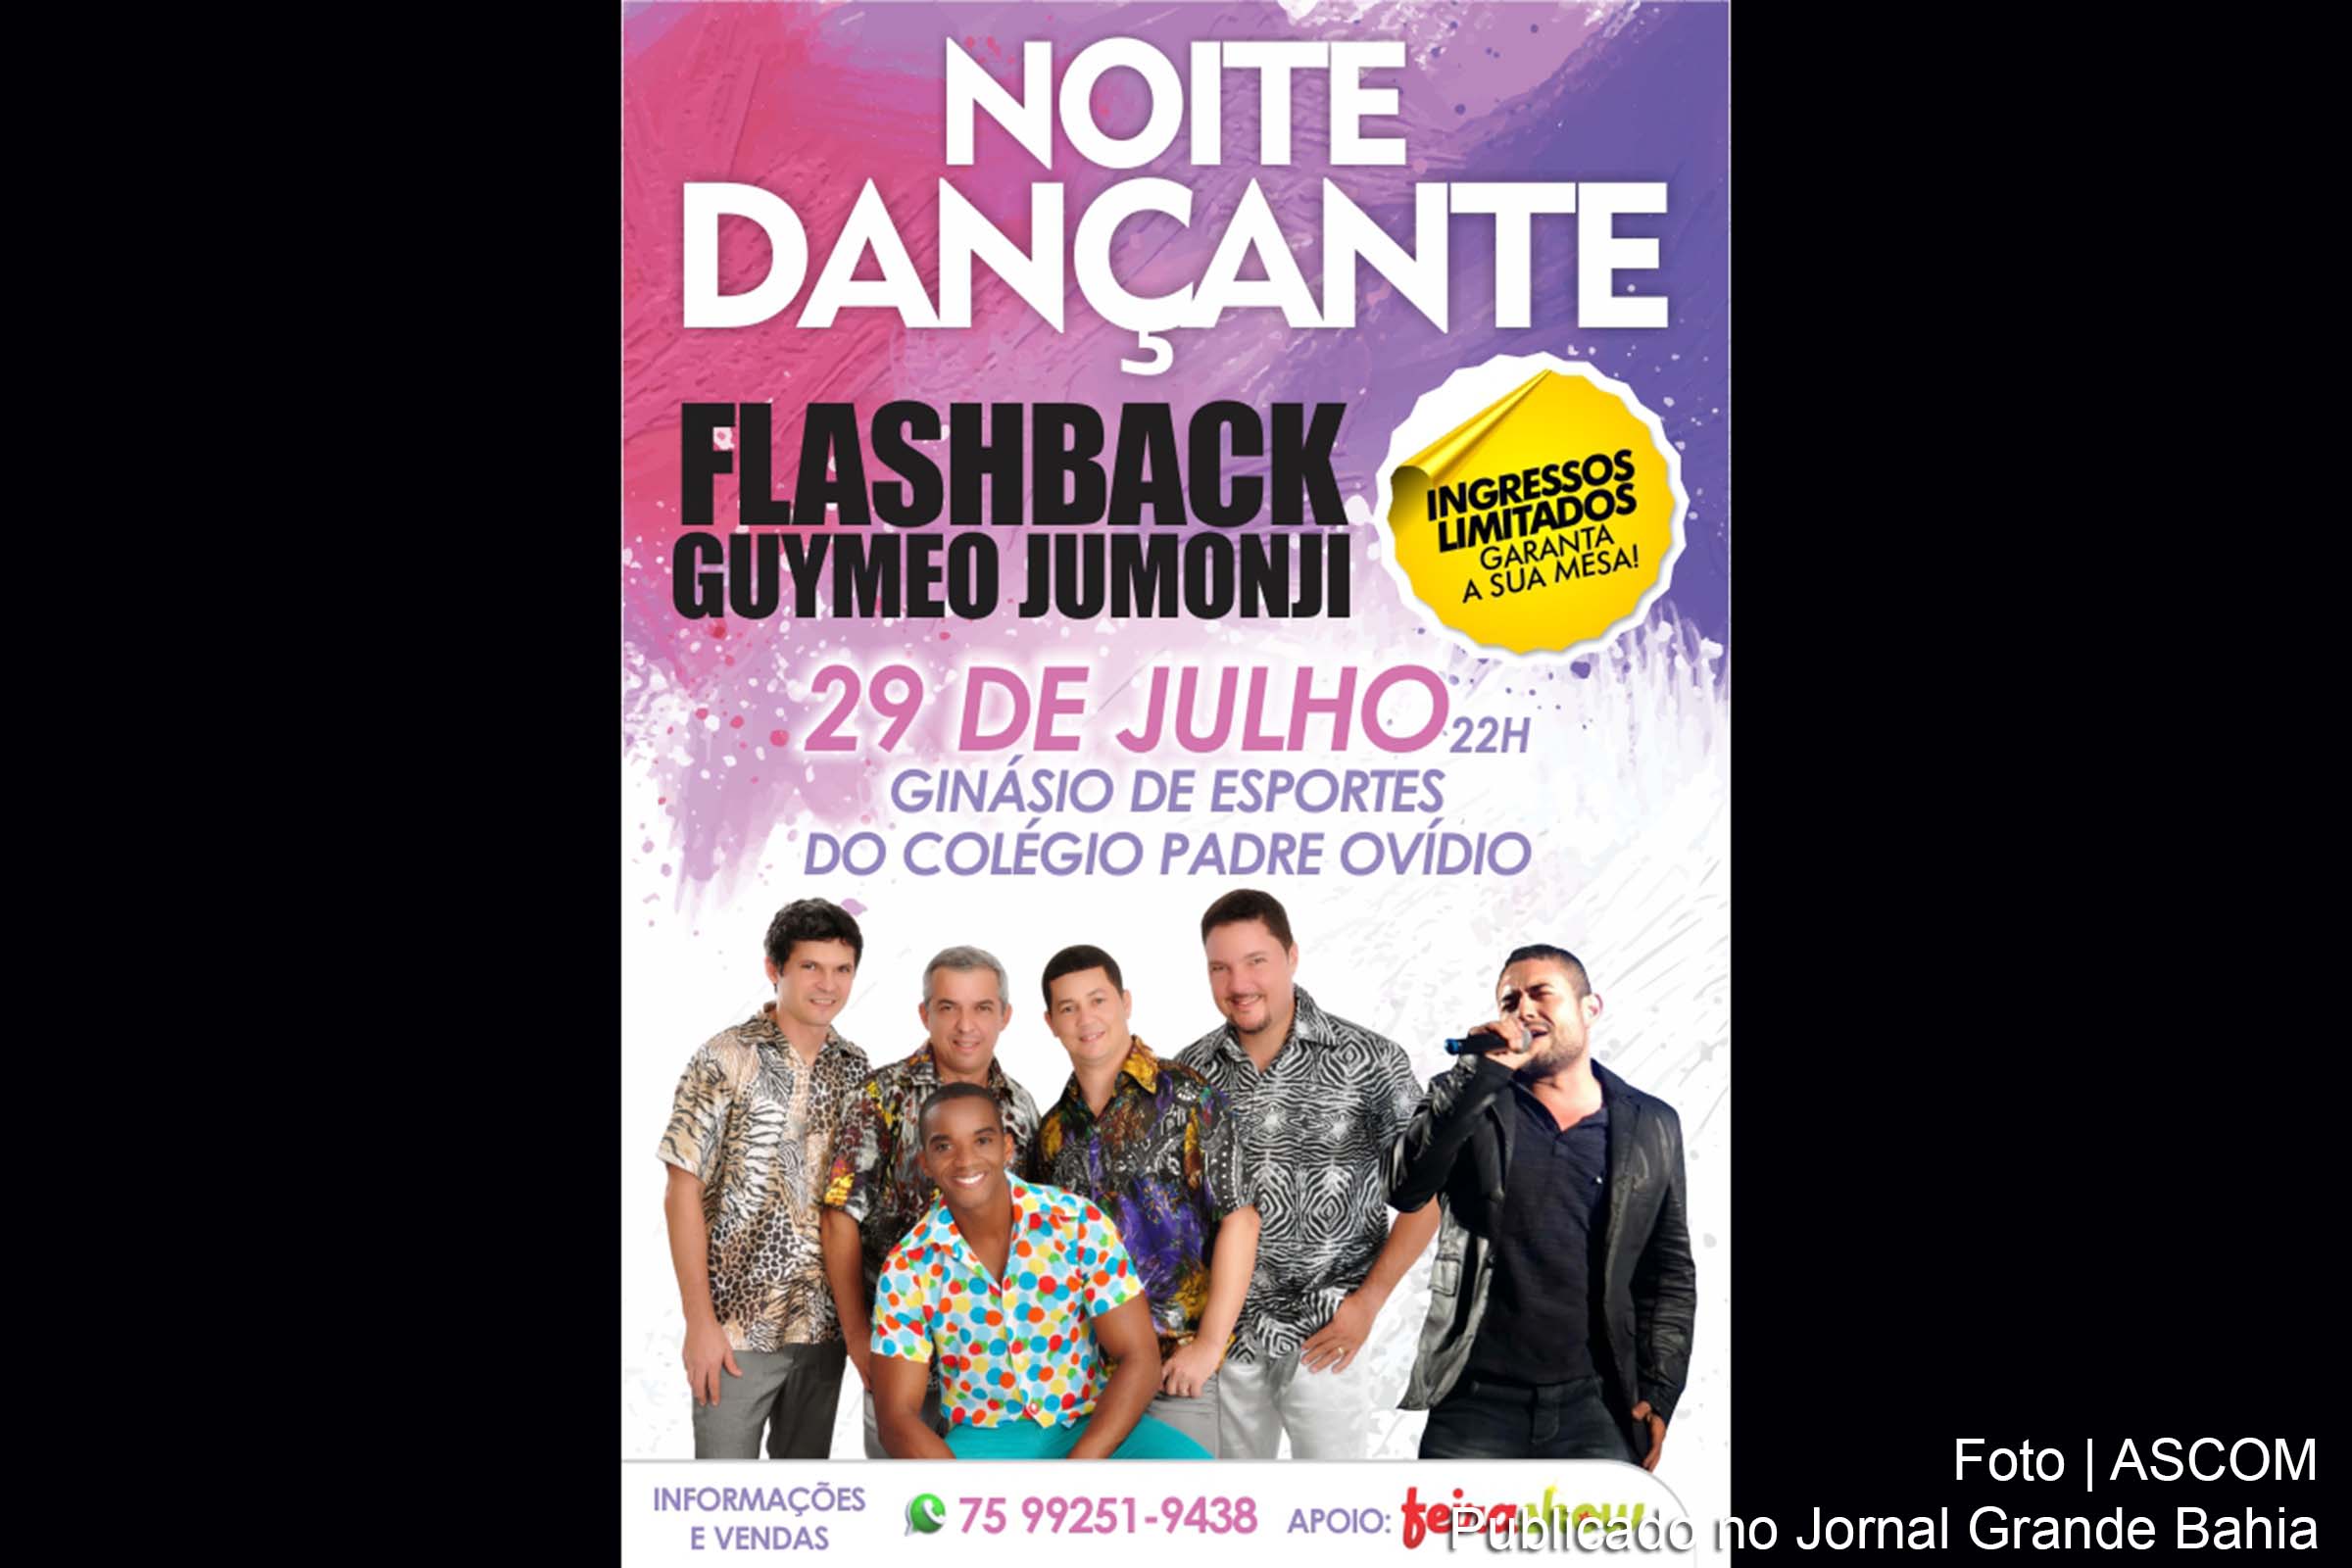 Cartaz anuncia show 'Noite Dancante', com Banda Flashback e Guymeo Jumonji.